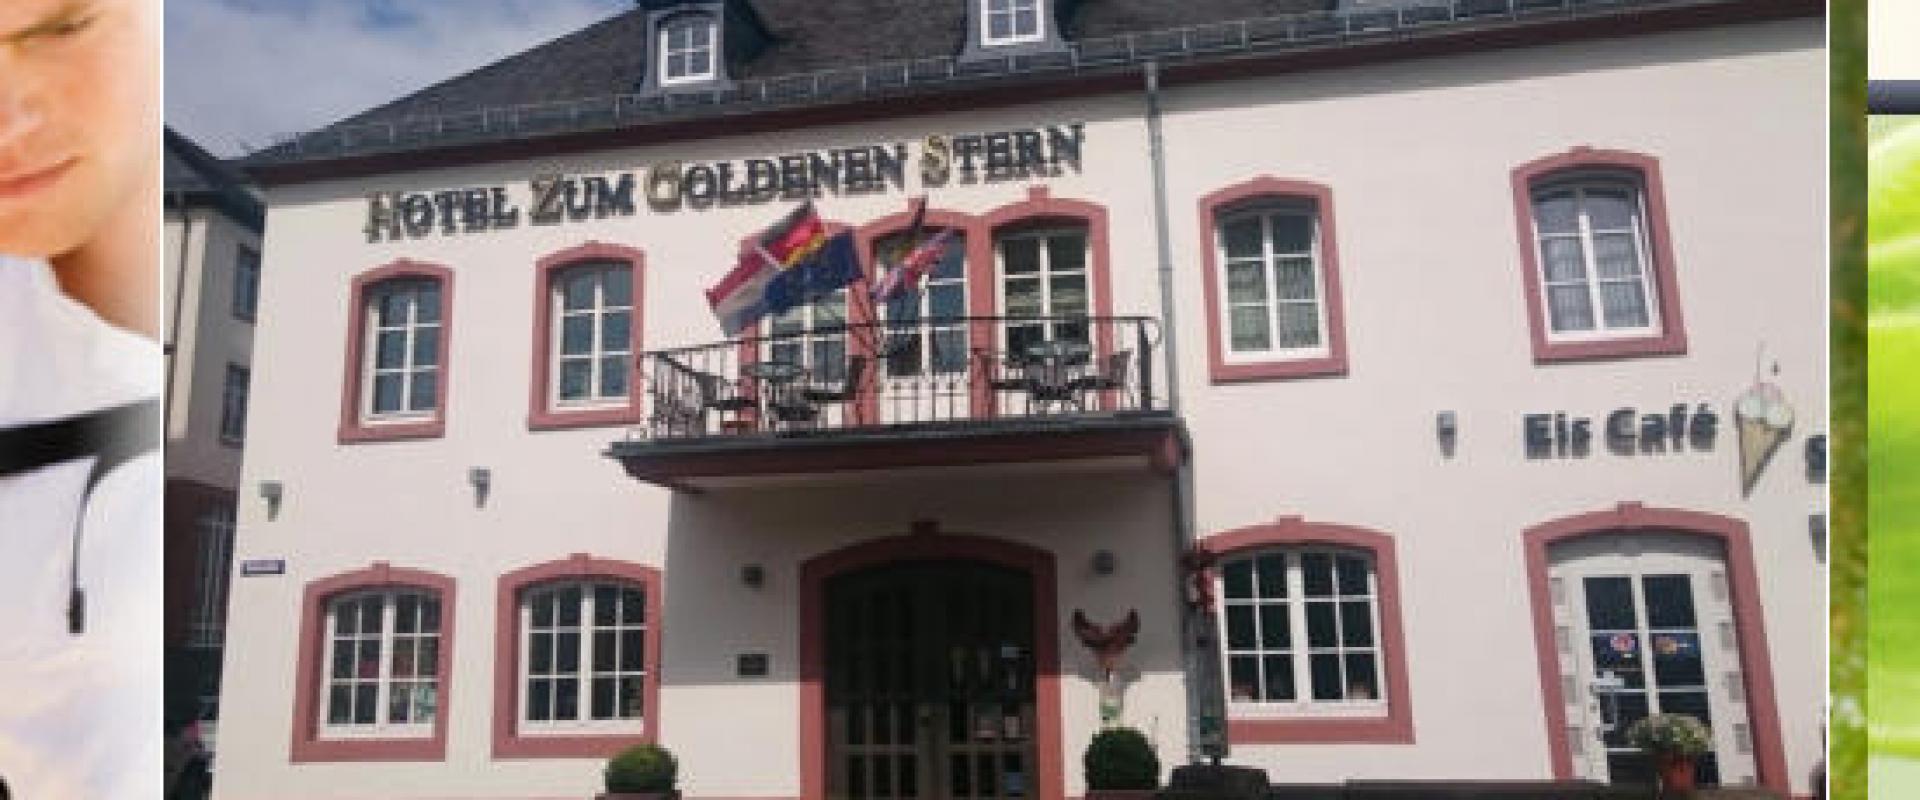 21616 Biker Hotel Zum Goldenen Stern in der Eifel.jpg